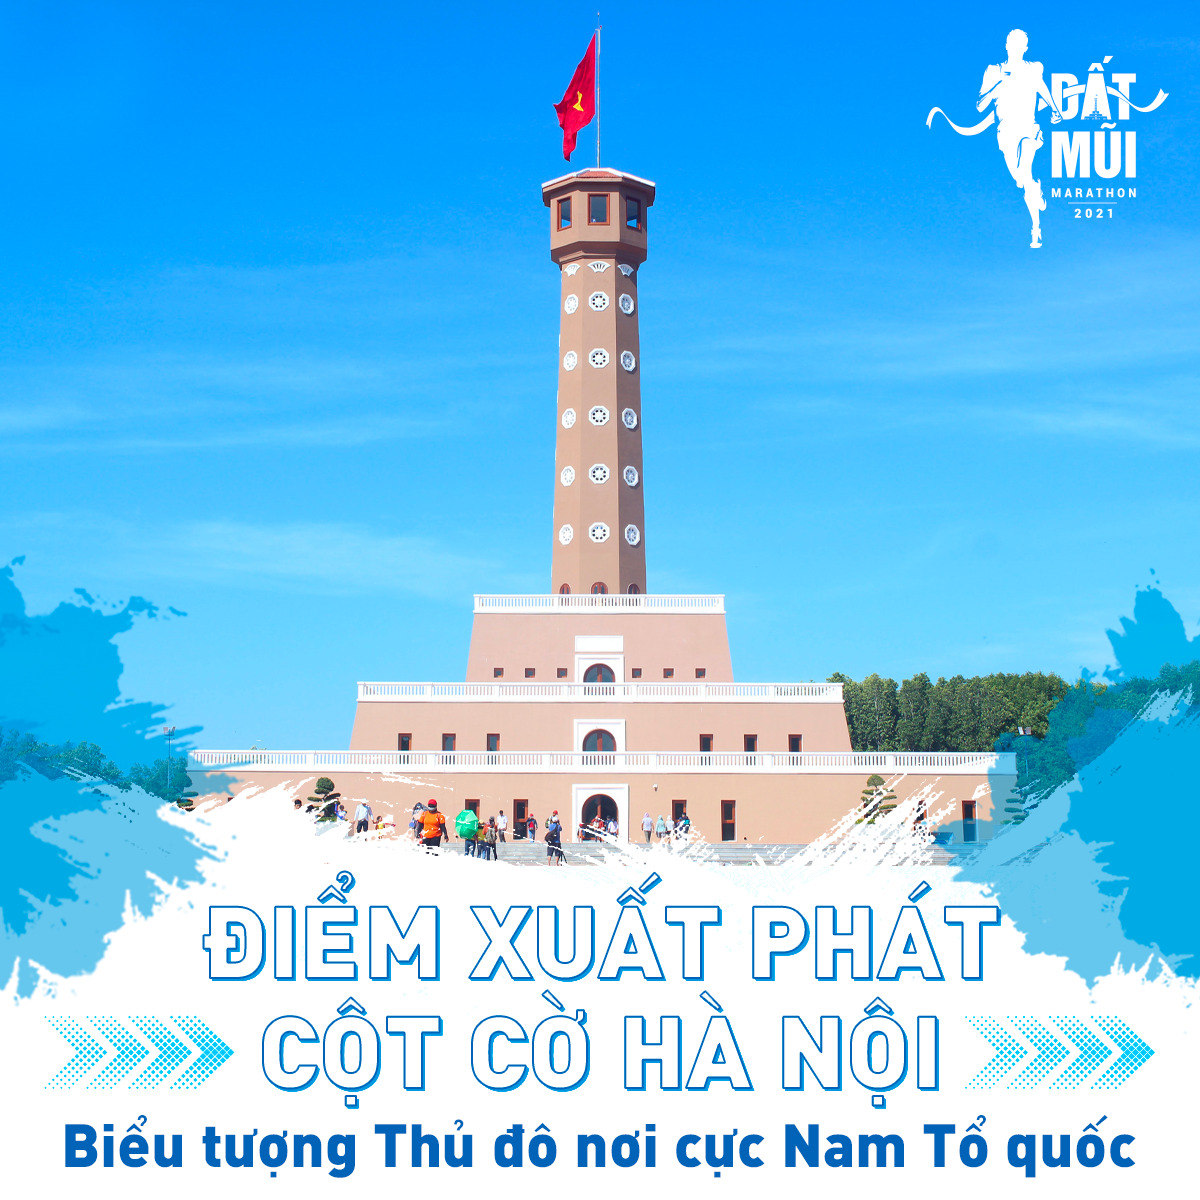 Các vận động viên tham gia giải chạy Đất Mũi Marathon Cà Mau 2022 tranh Cúp PETROVIETNAM sẽ xuất phát và về đích tại Quảng trường cột cờ Hà Nội (ảnh BTC)